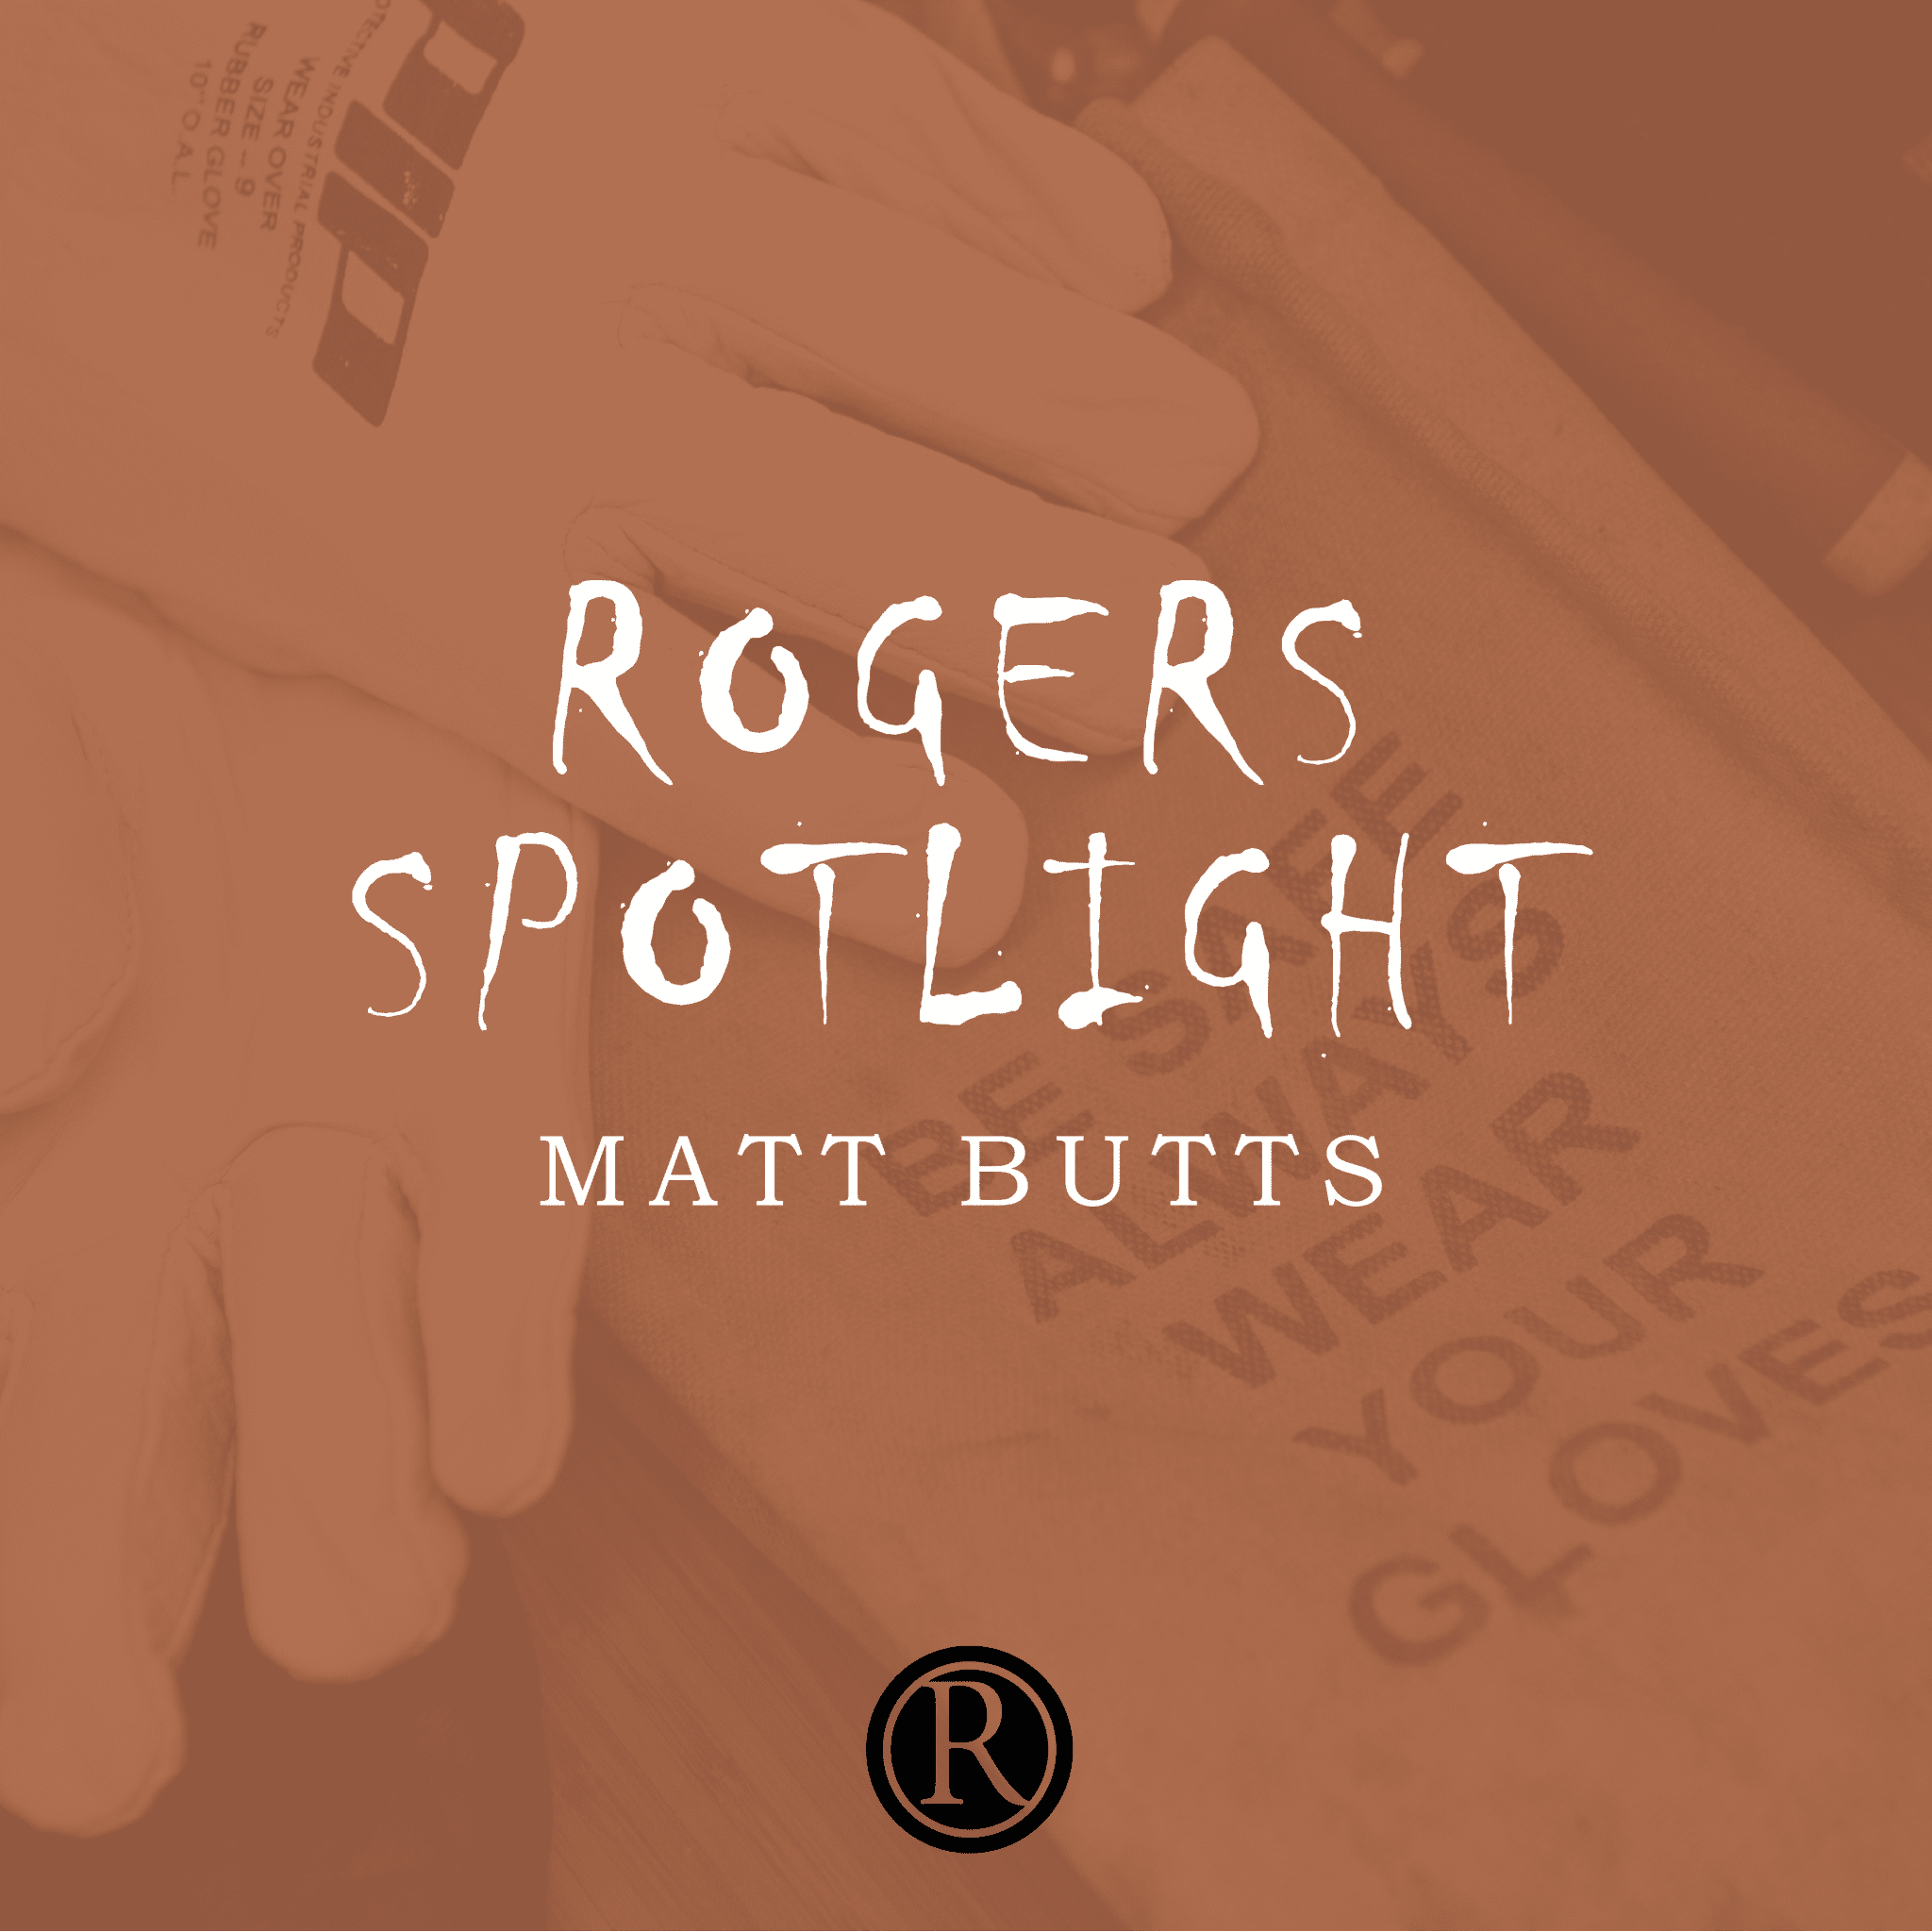 Rogers Spotlight: Matt Butts